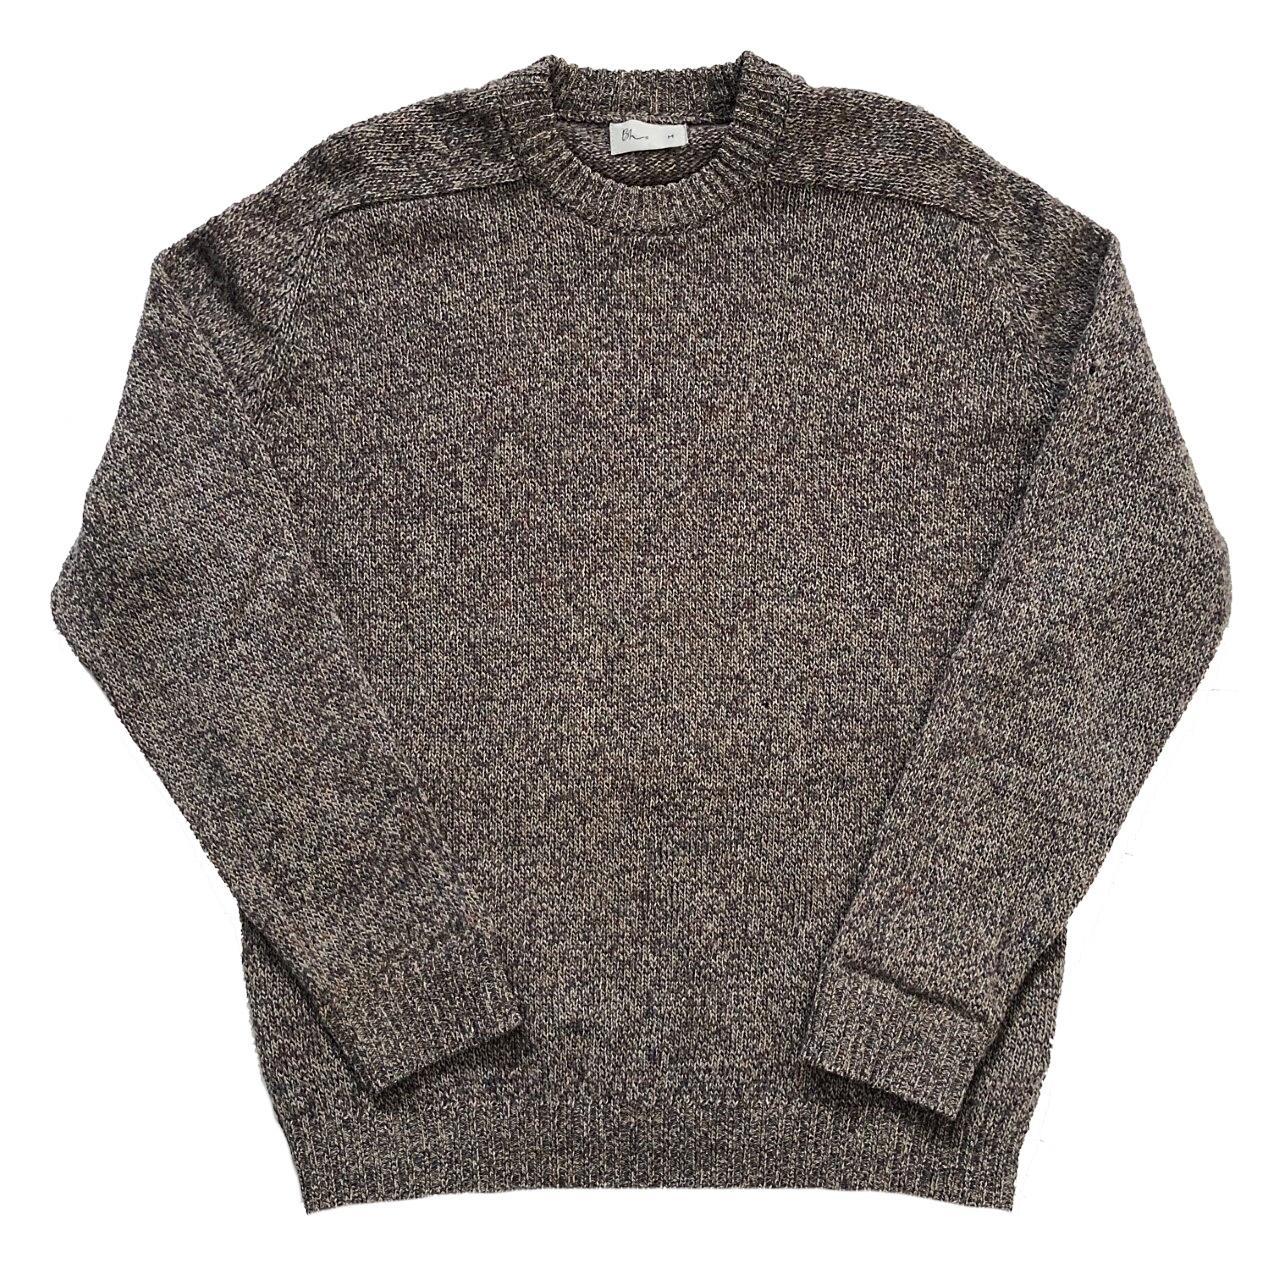 Vintage BHS knitted jumper | Speckled design | Round... - Depop